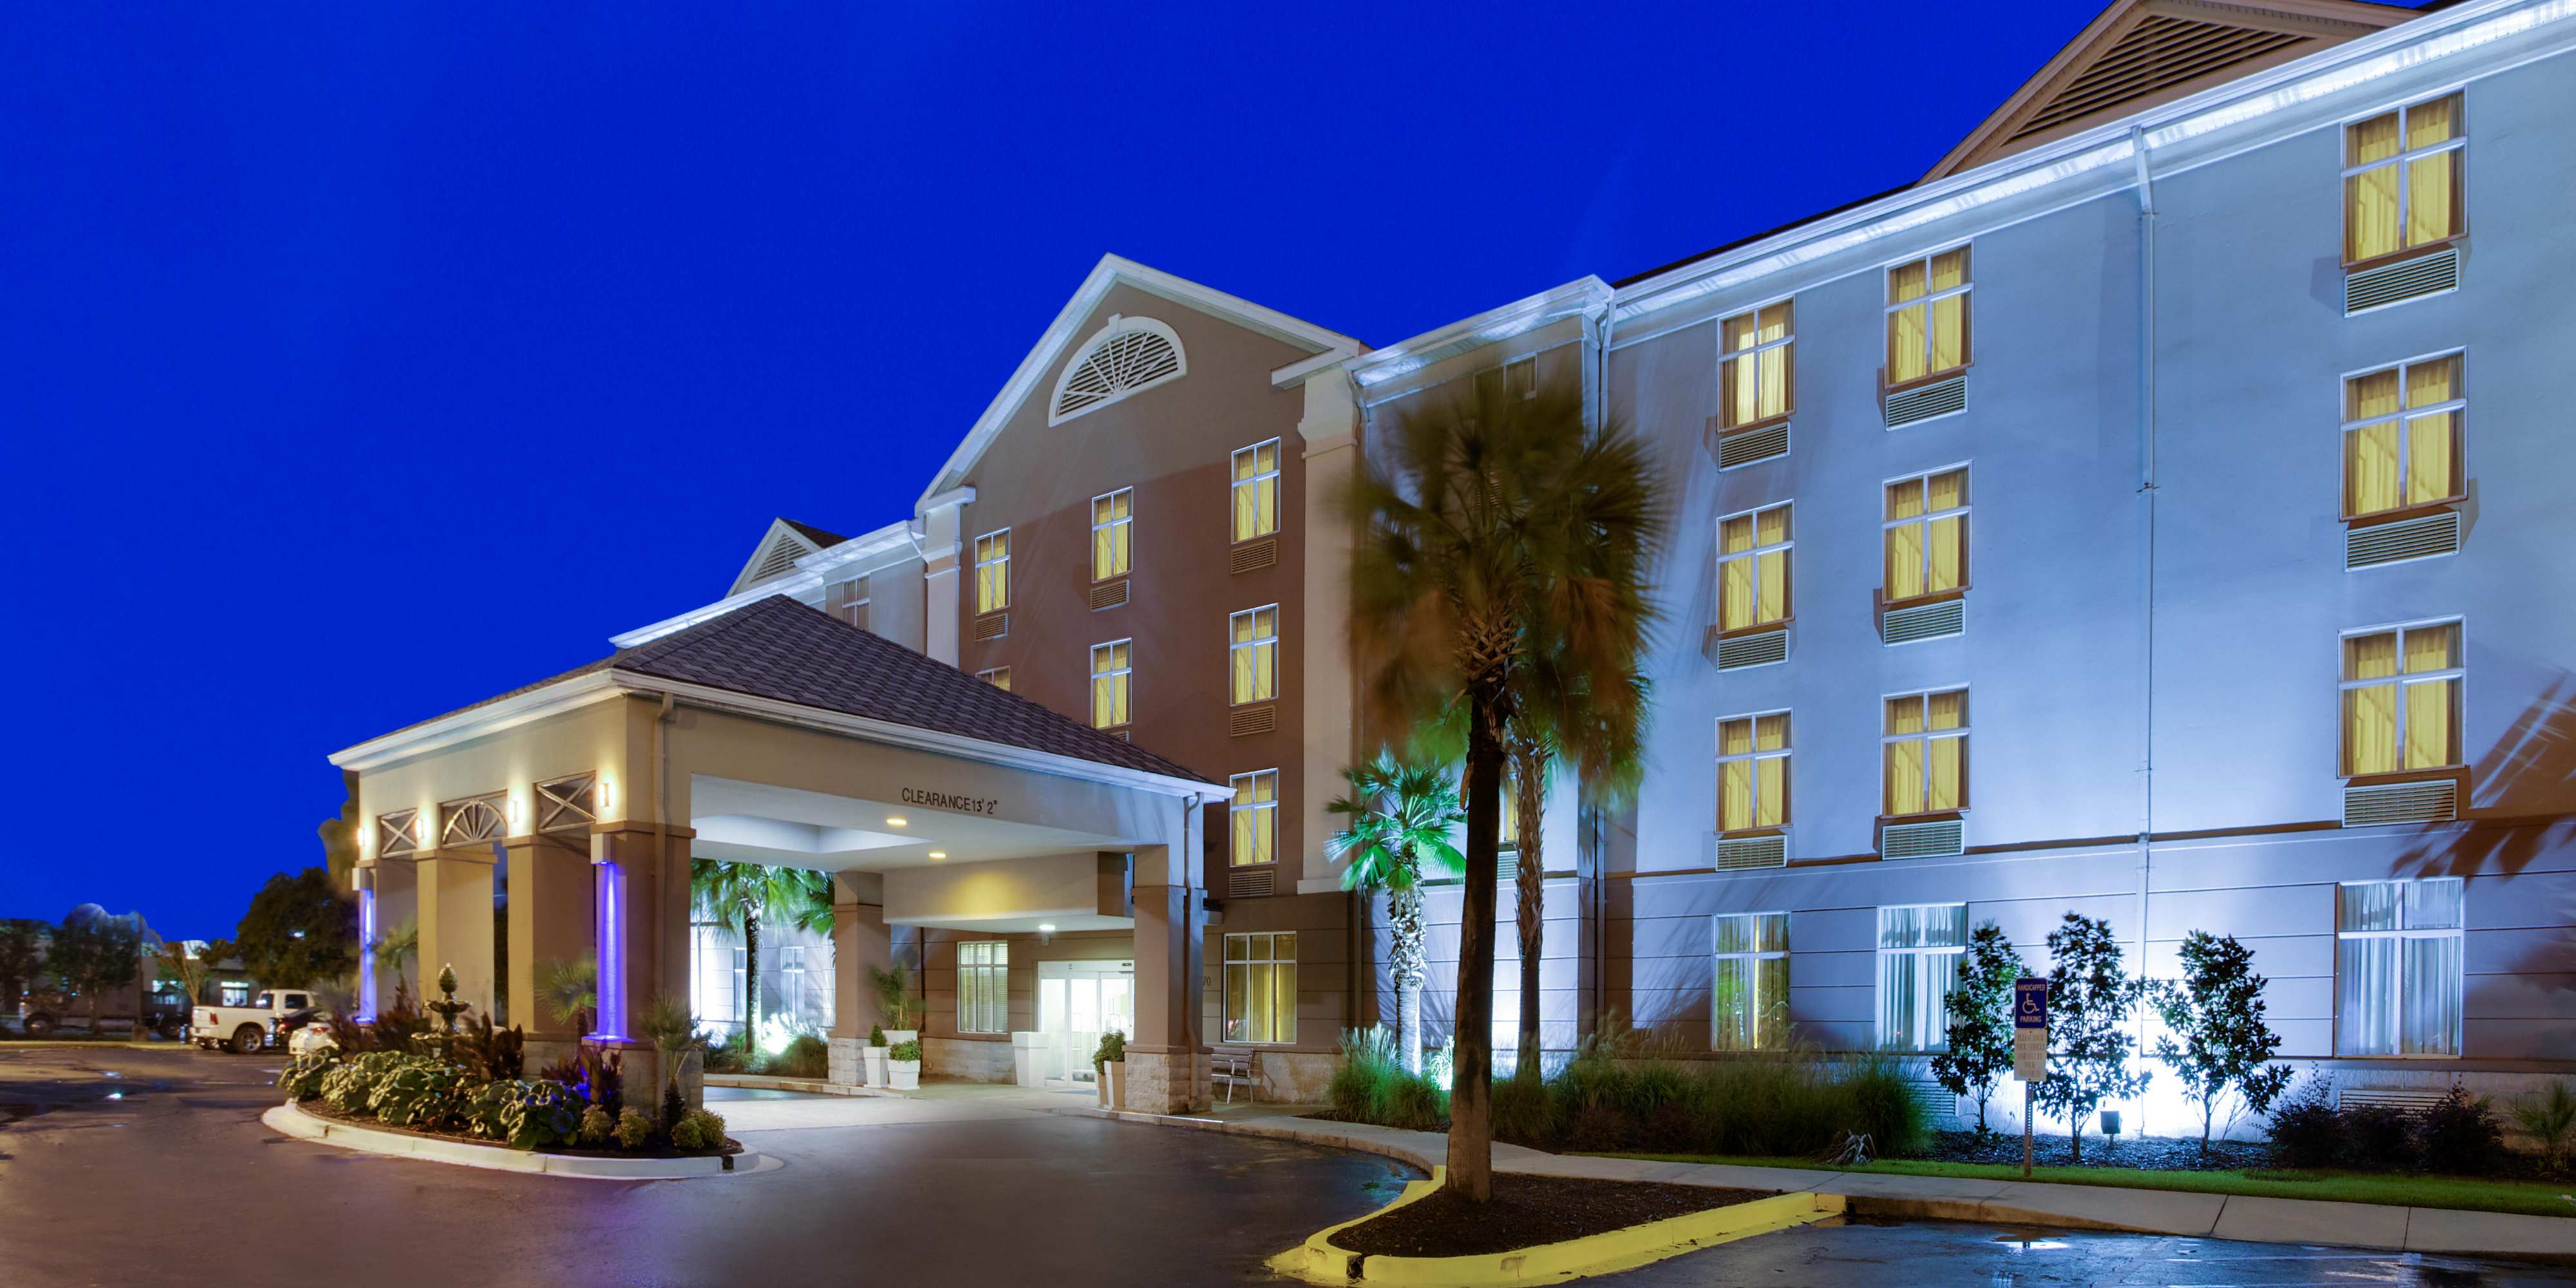 Accommodations, Charleston, SC Hotels